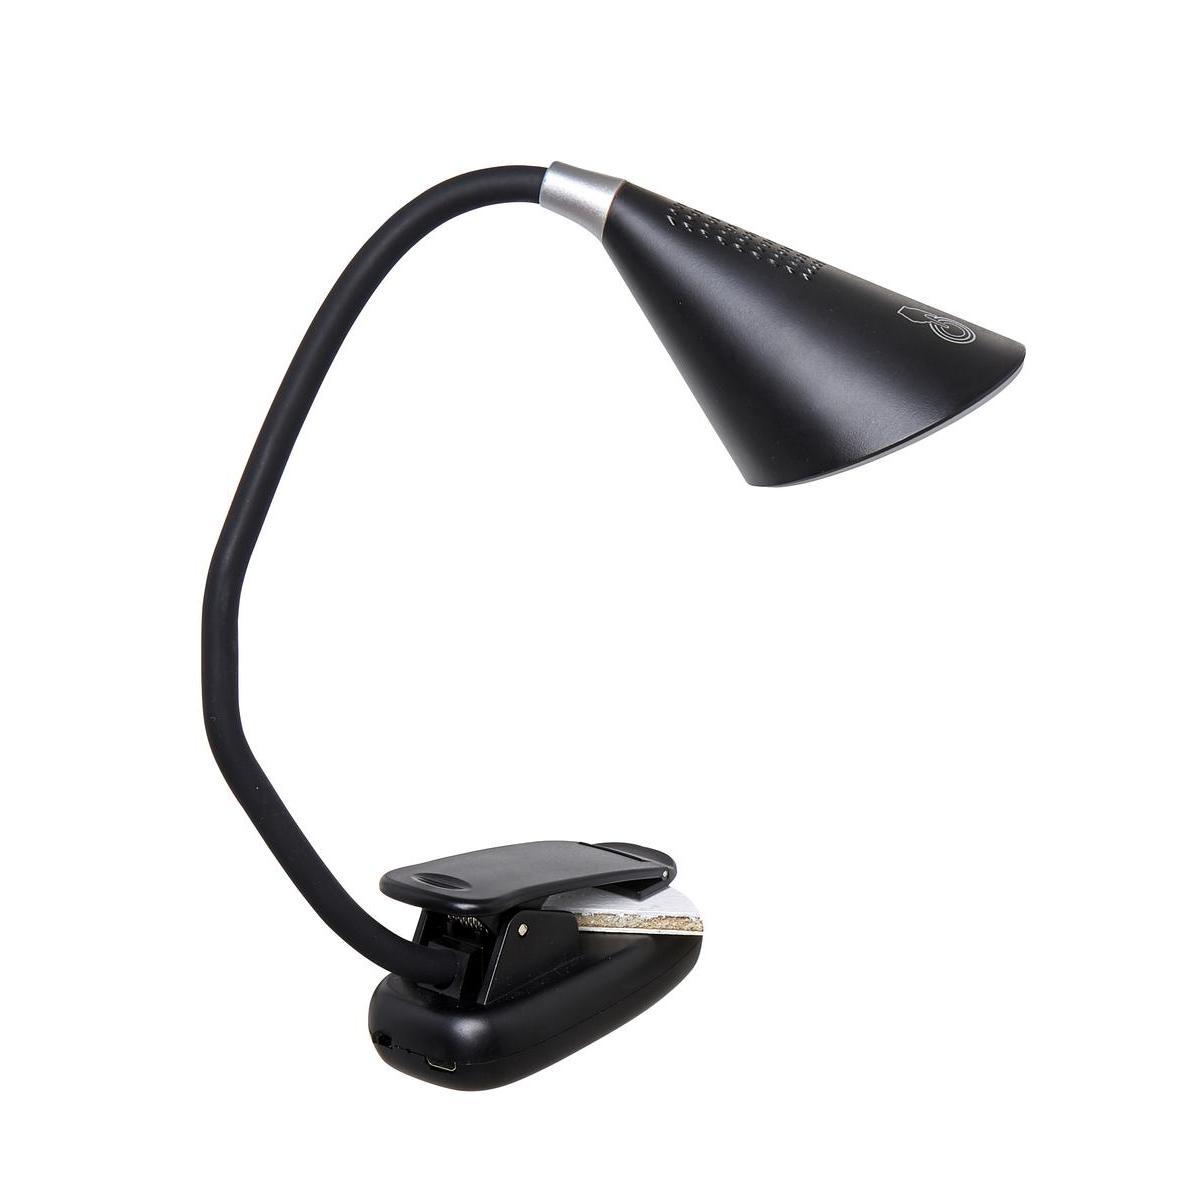 Lampe Touch à clips - L 34 cm - Différents coloris - Noir, blanc